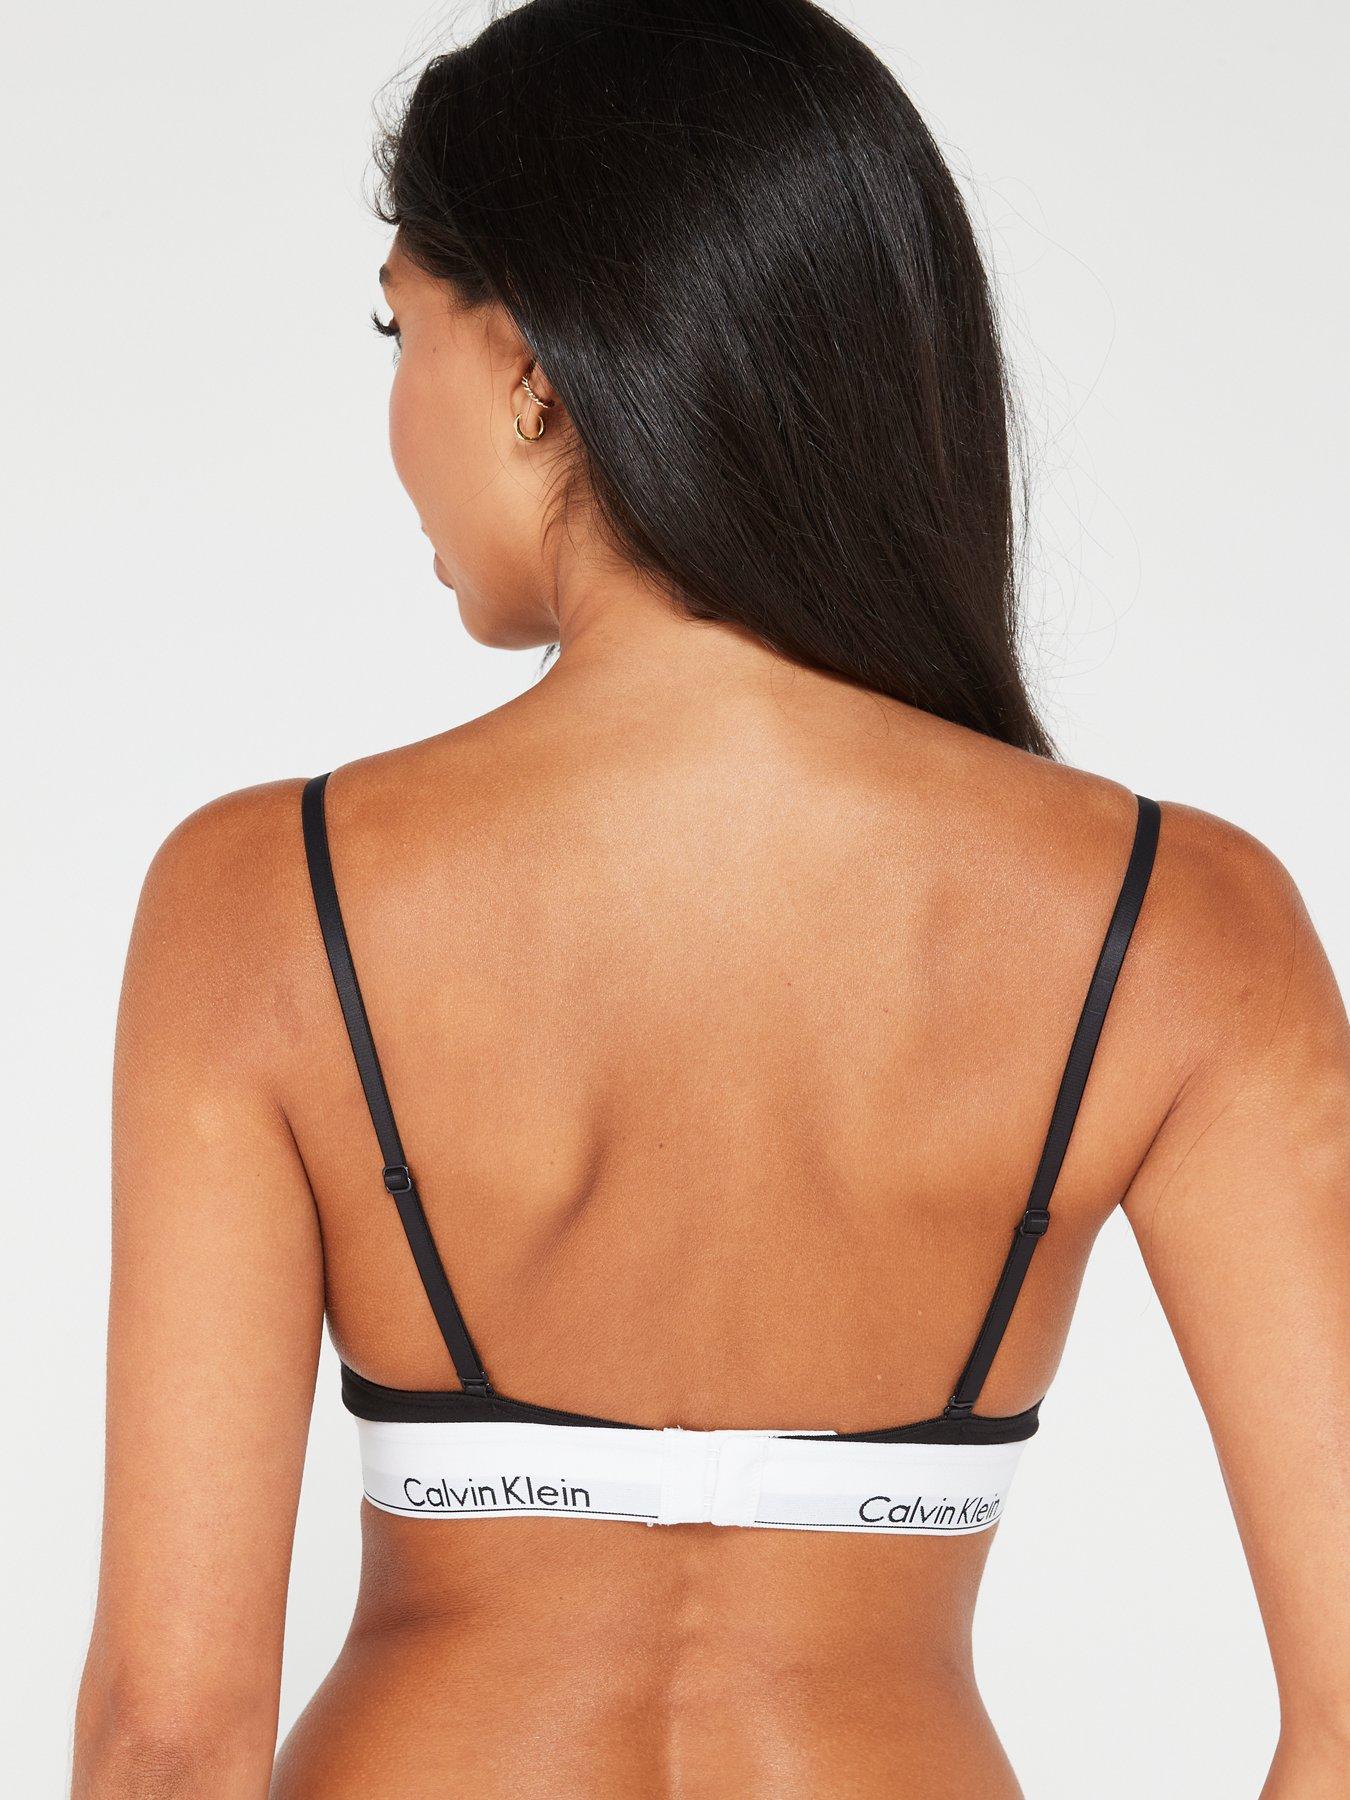 Calvin Klein - Women's Bras - 189 products